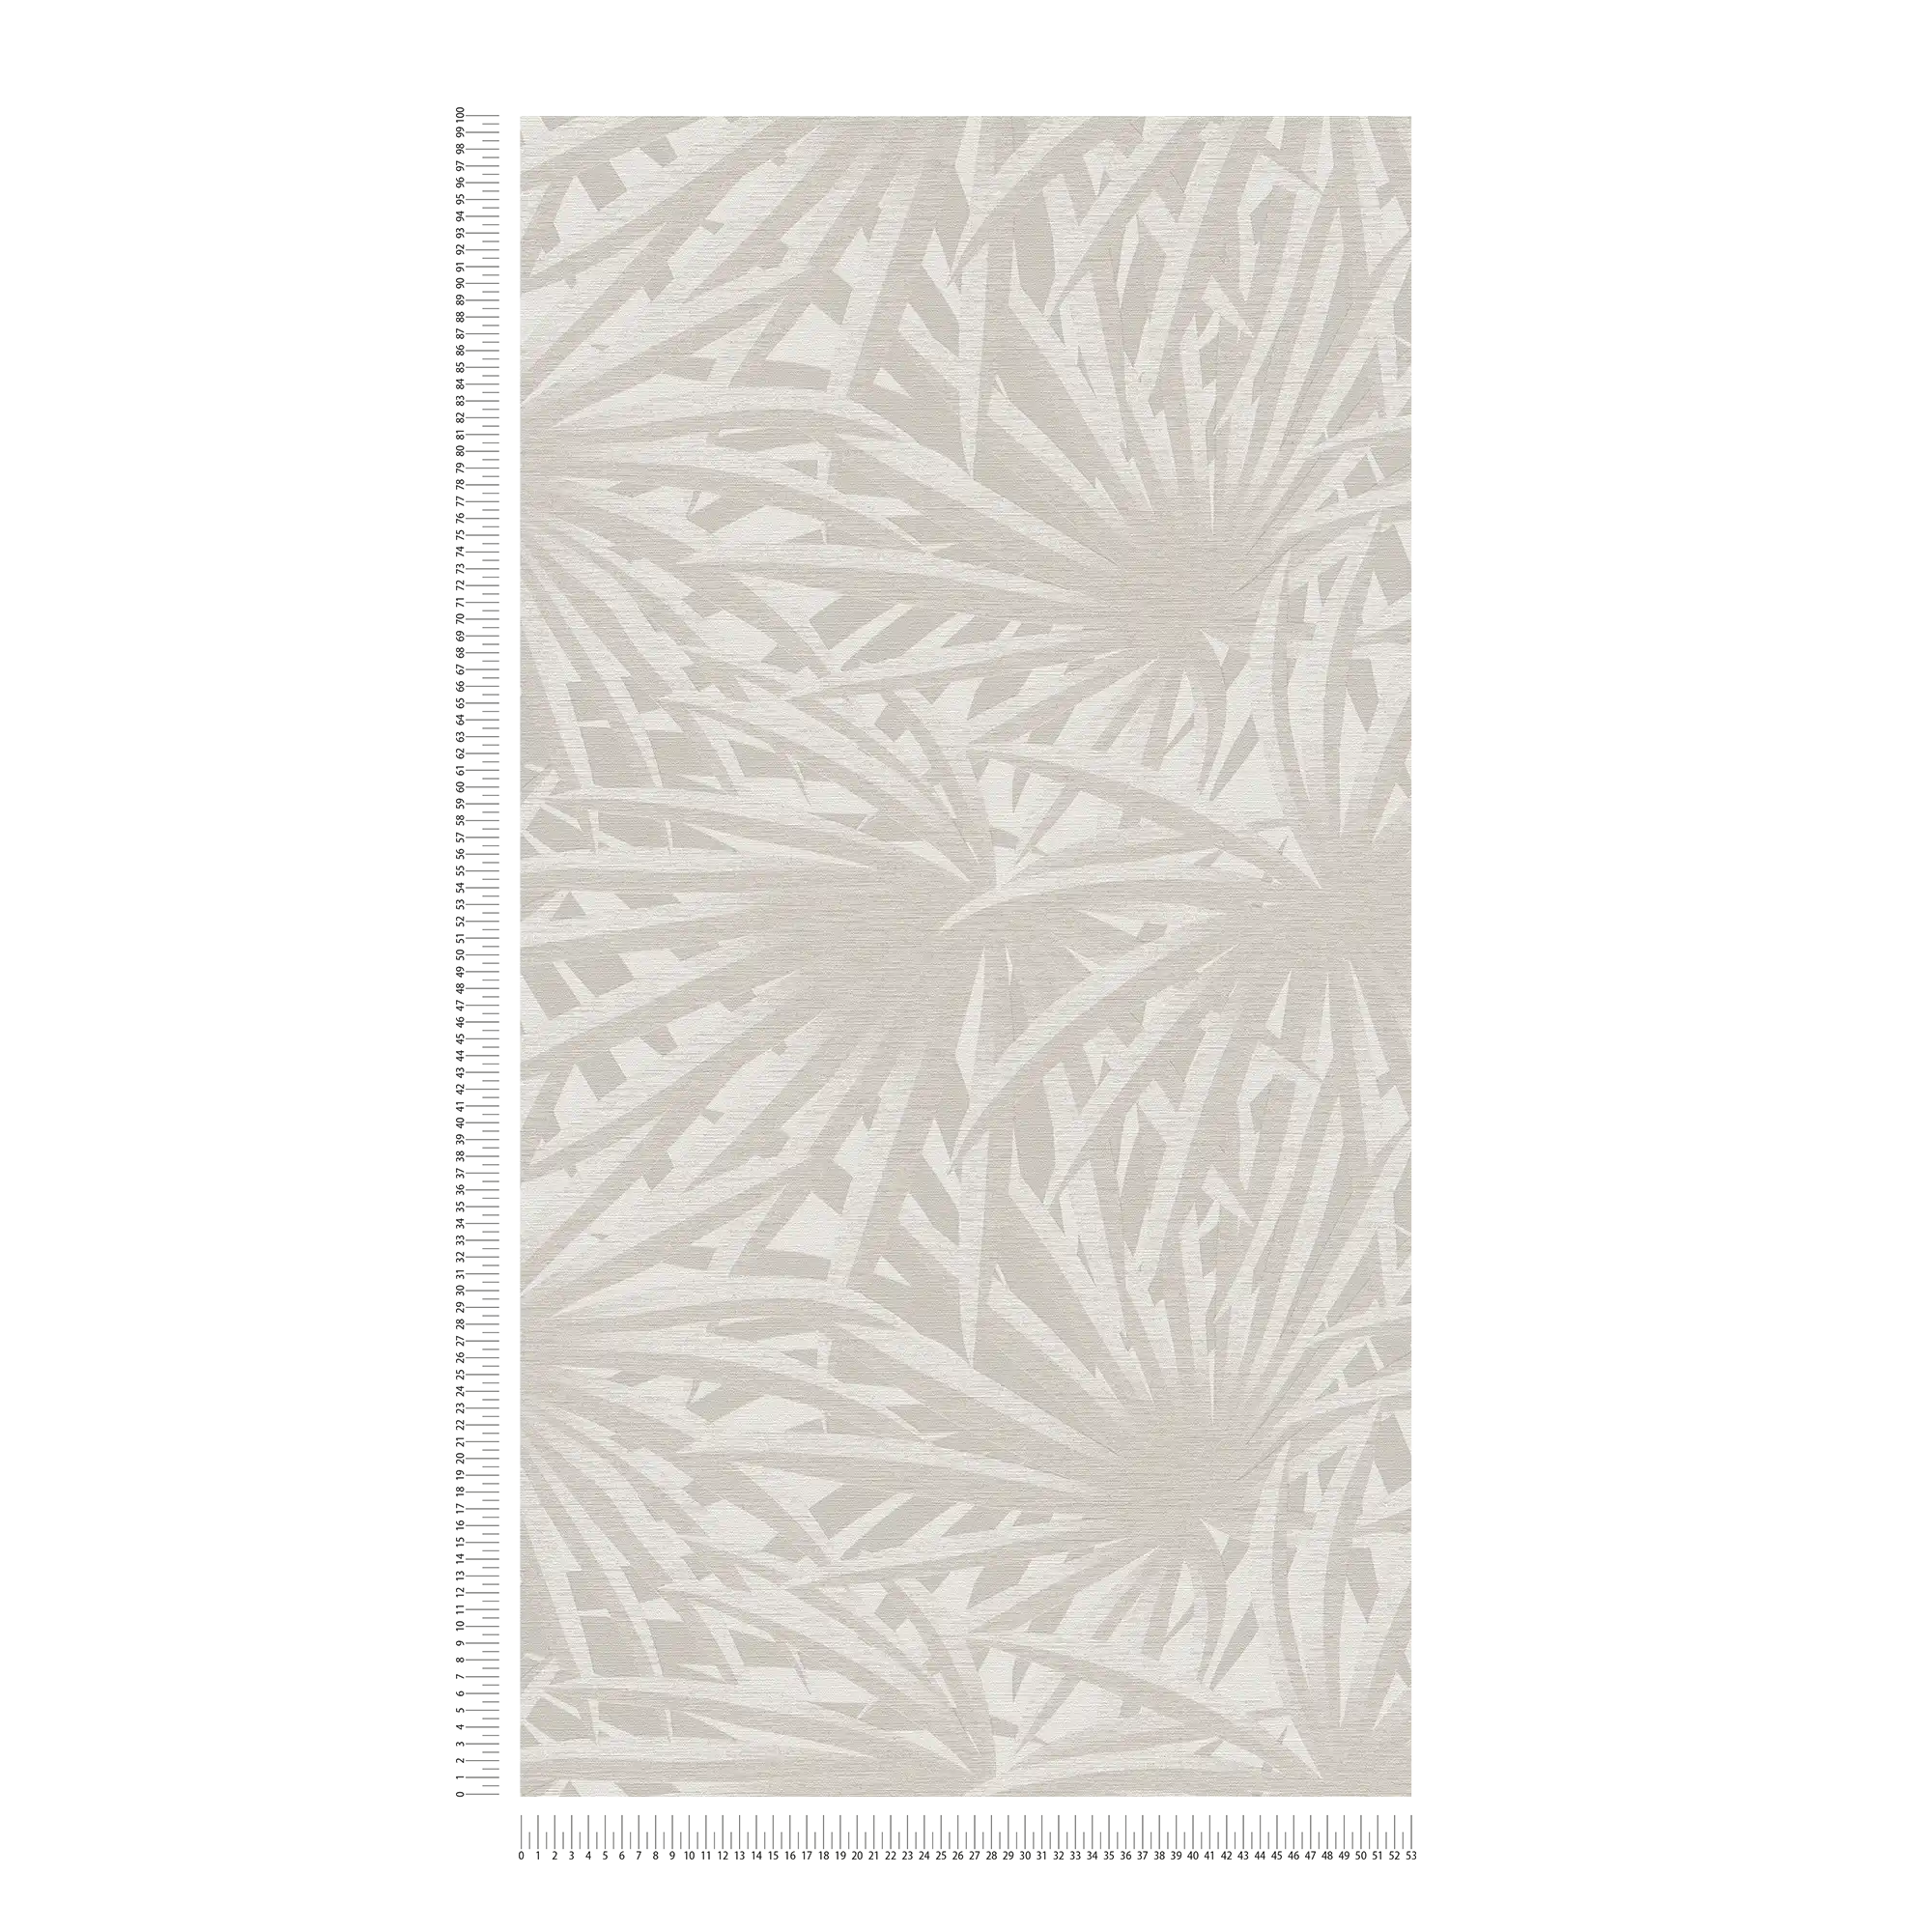             Carta da parati in tessuto non tessuto con disegno di foglie e lucentezza metallica - grigio, metallizzato, bianco
        